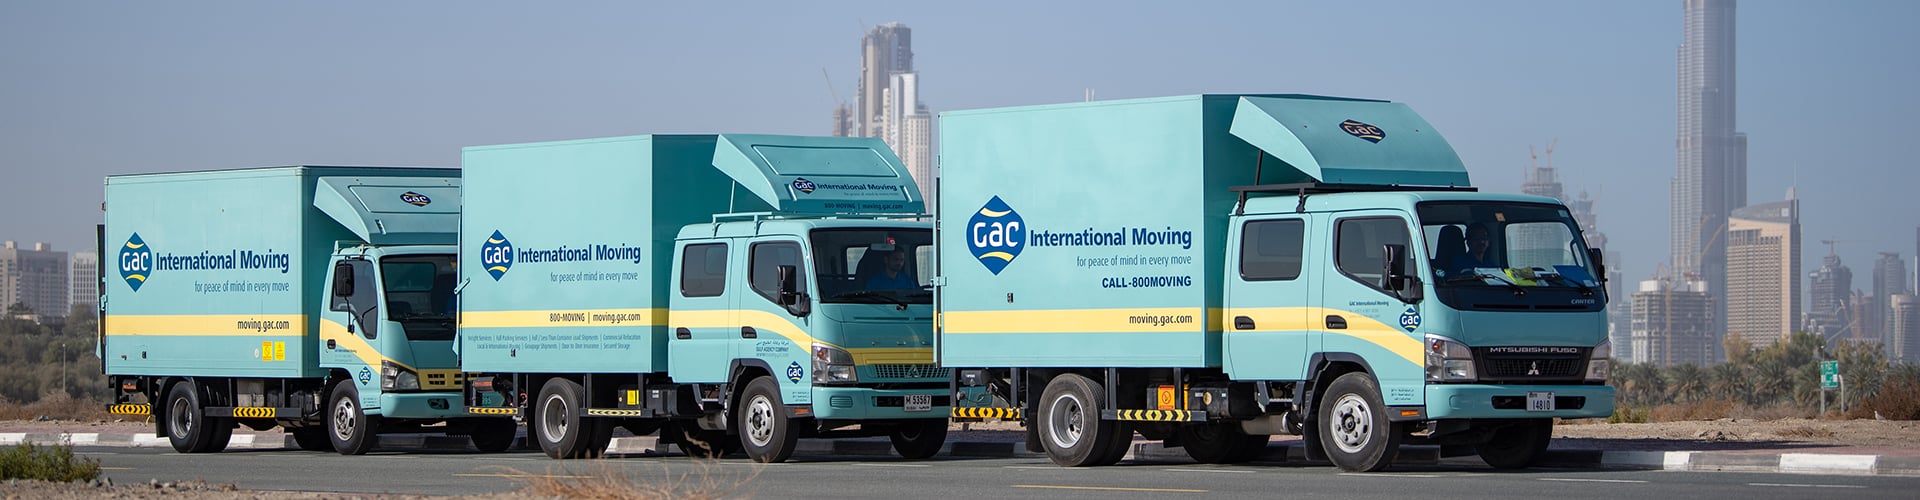 GAC International Moving